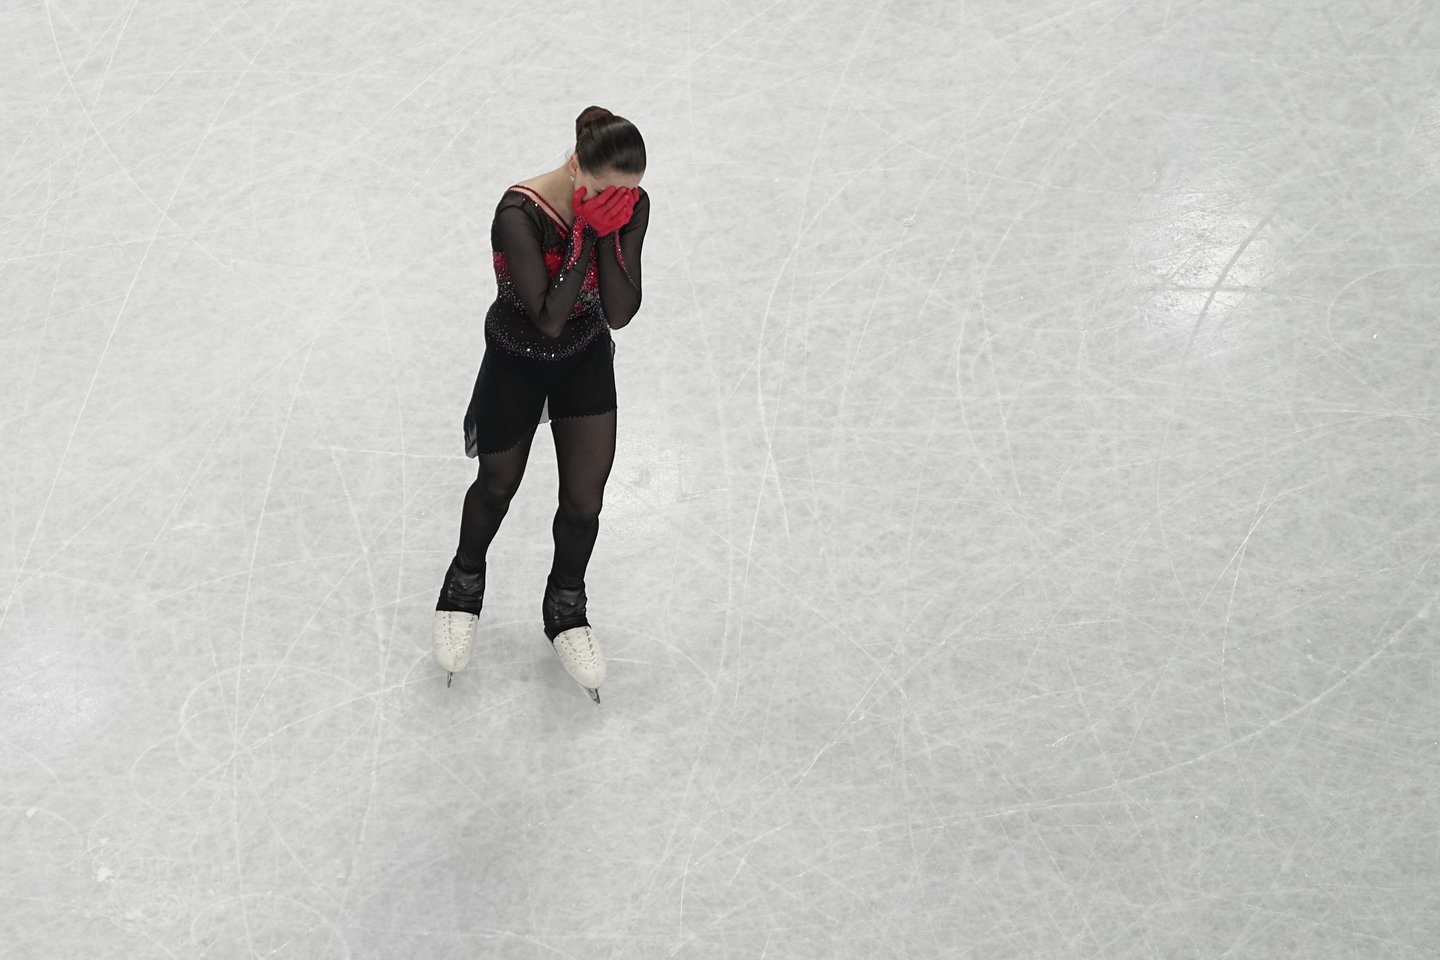 K.Valijeva ketvirtadienį vykusiose laisvosios dailiojo čiuožimo programos varžybose liko be medalio.<br>AFP/Scanpix.com nuotr.